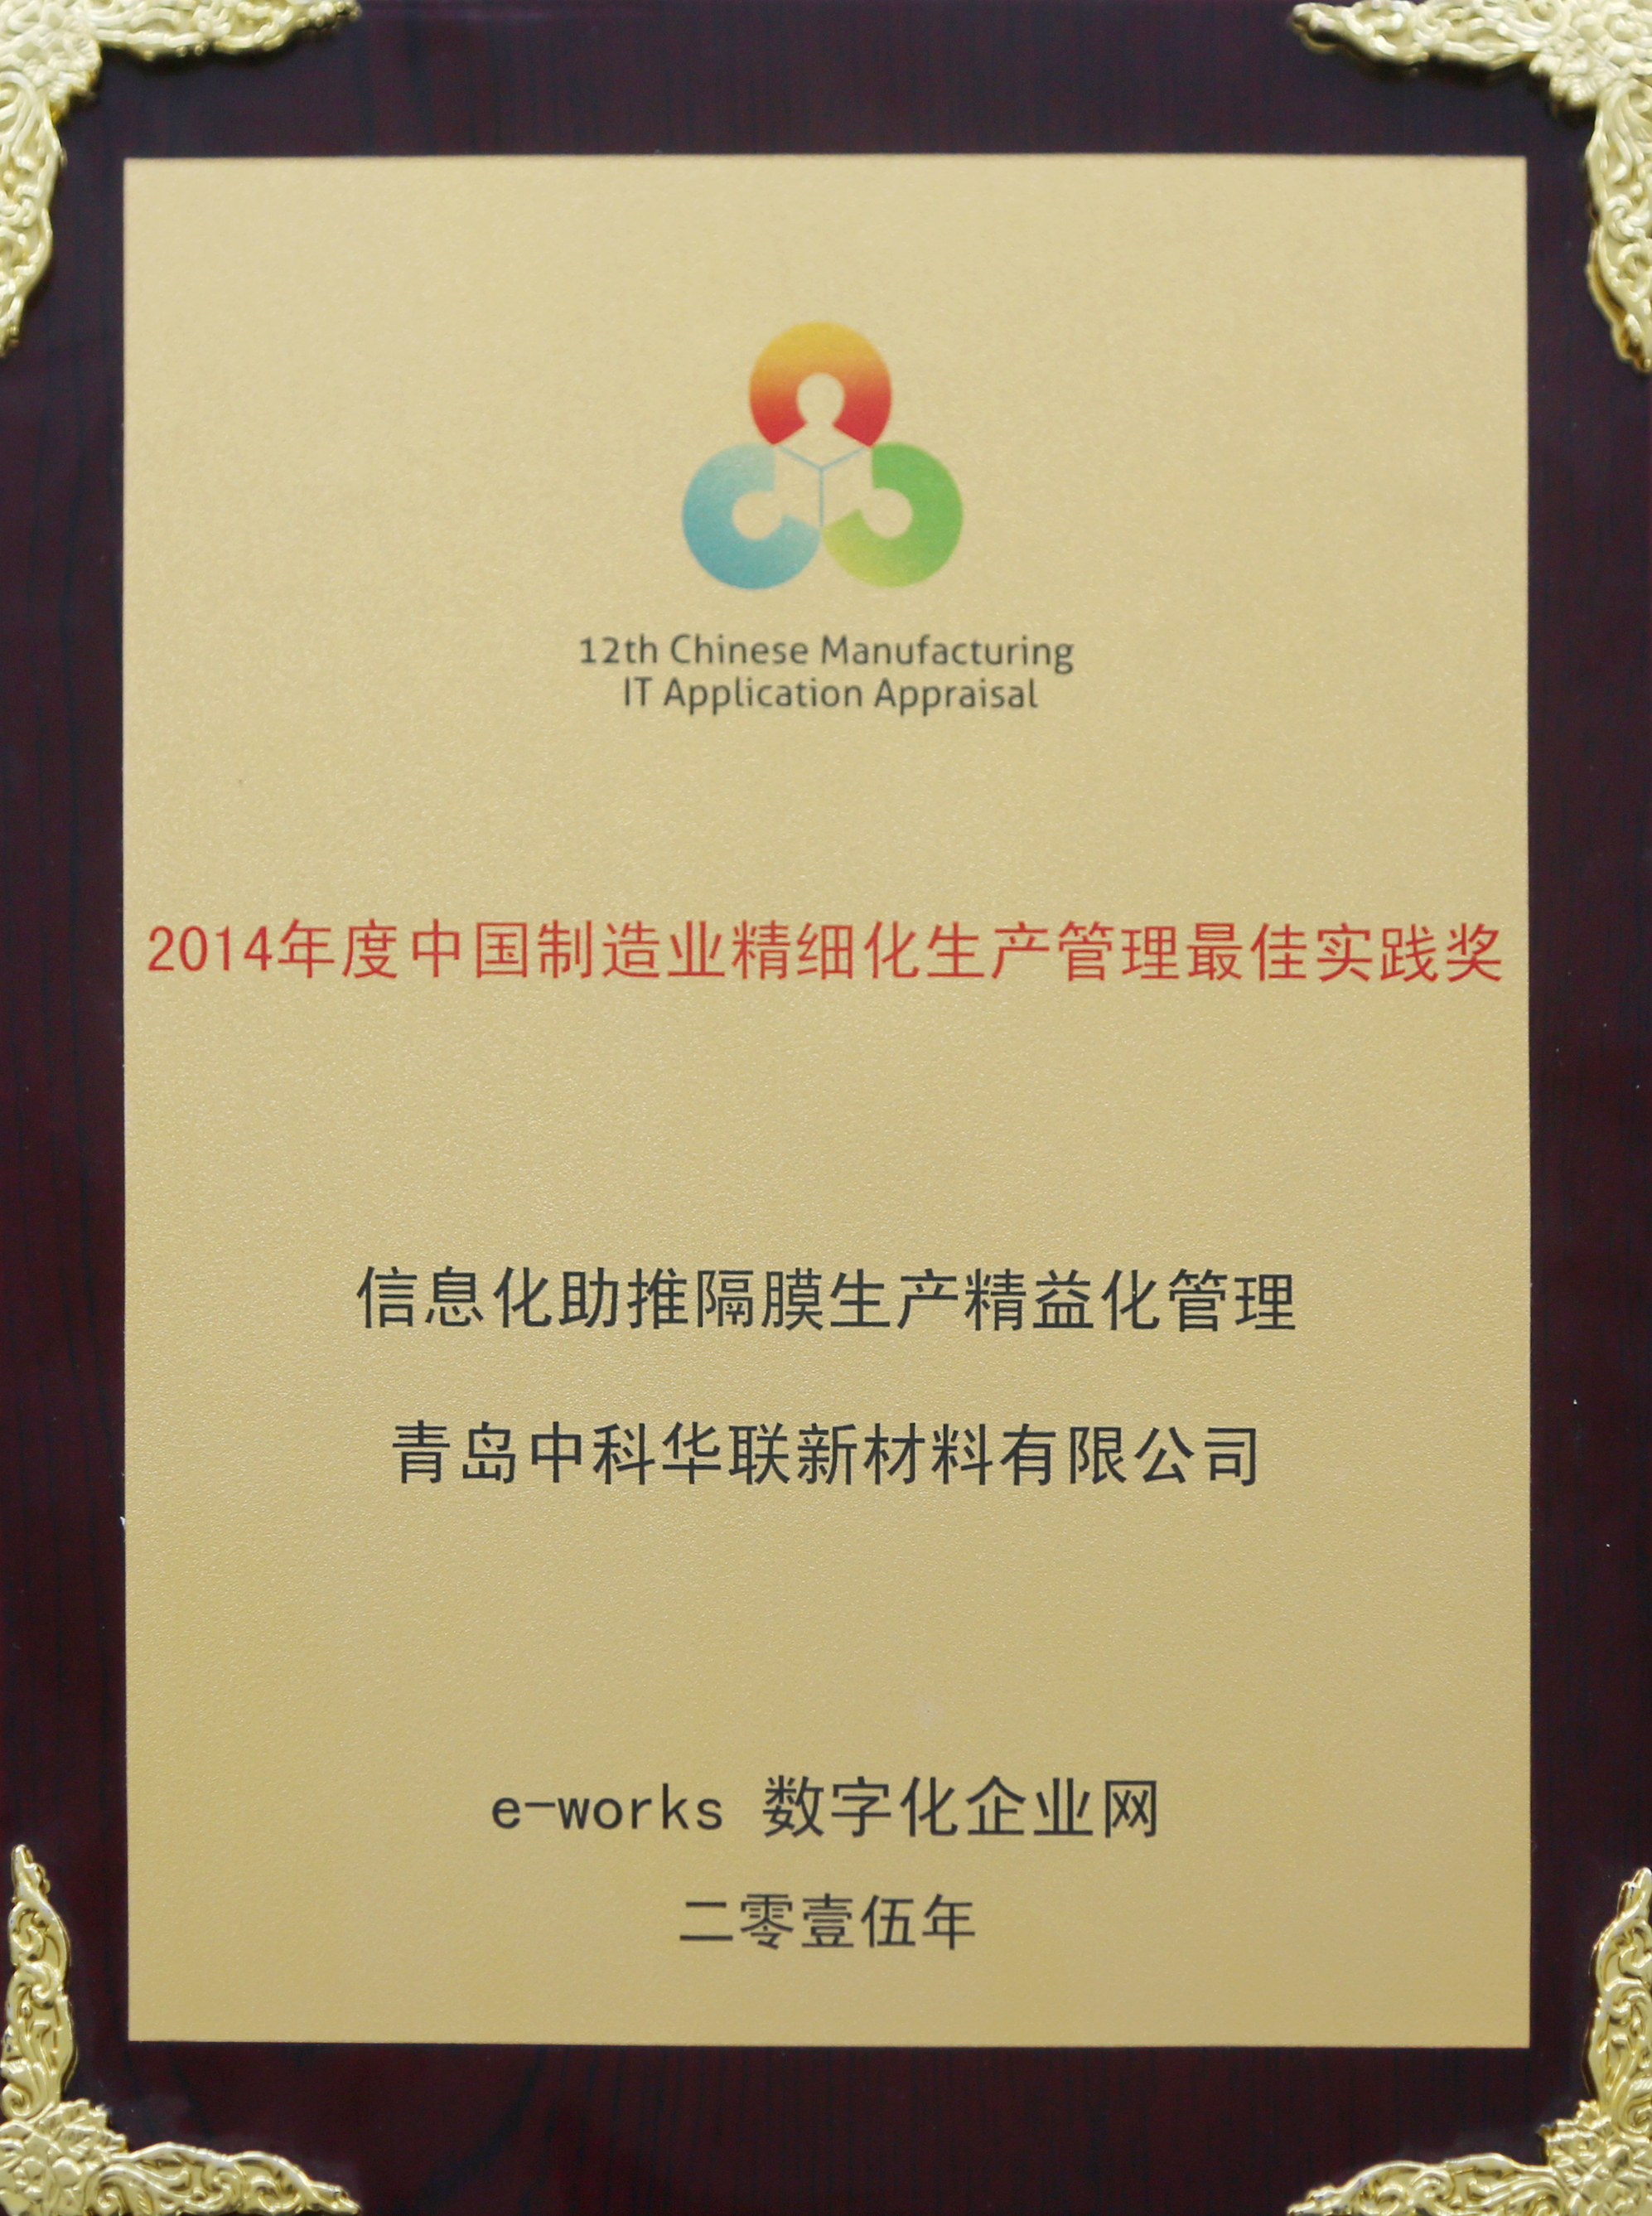 3.62014年度中国制造业精细化生产管理实践奖-1